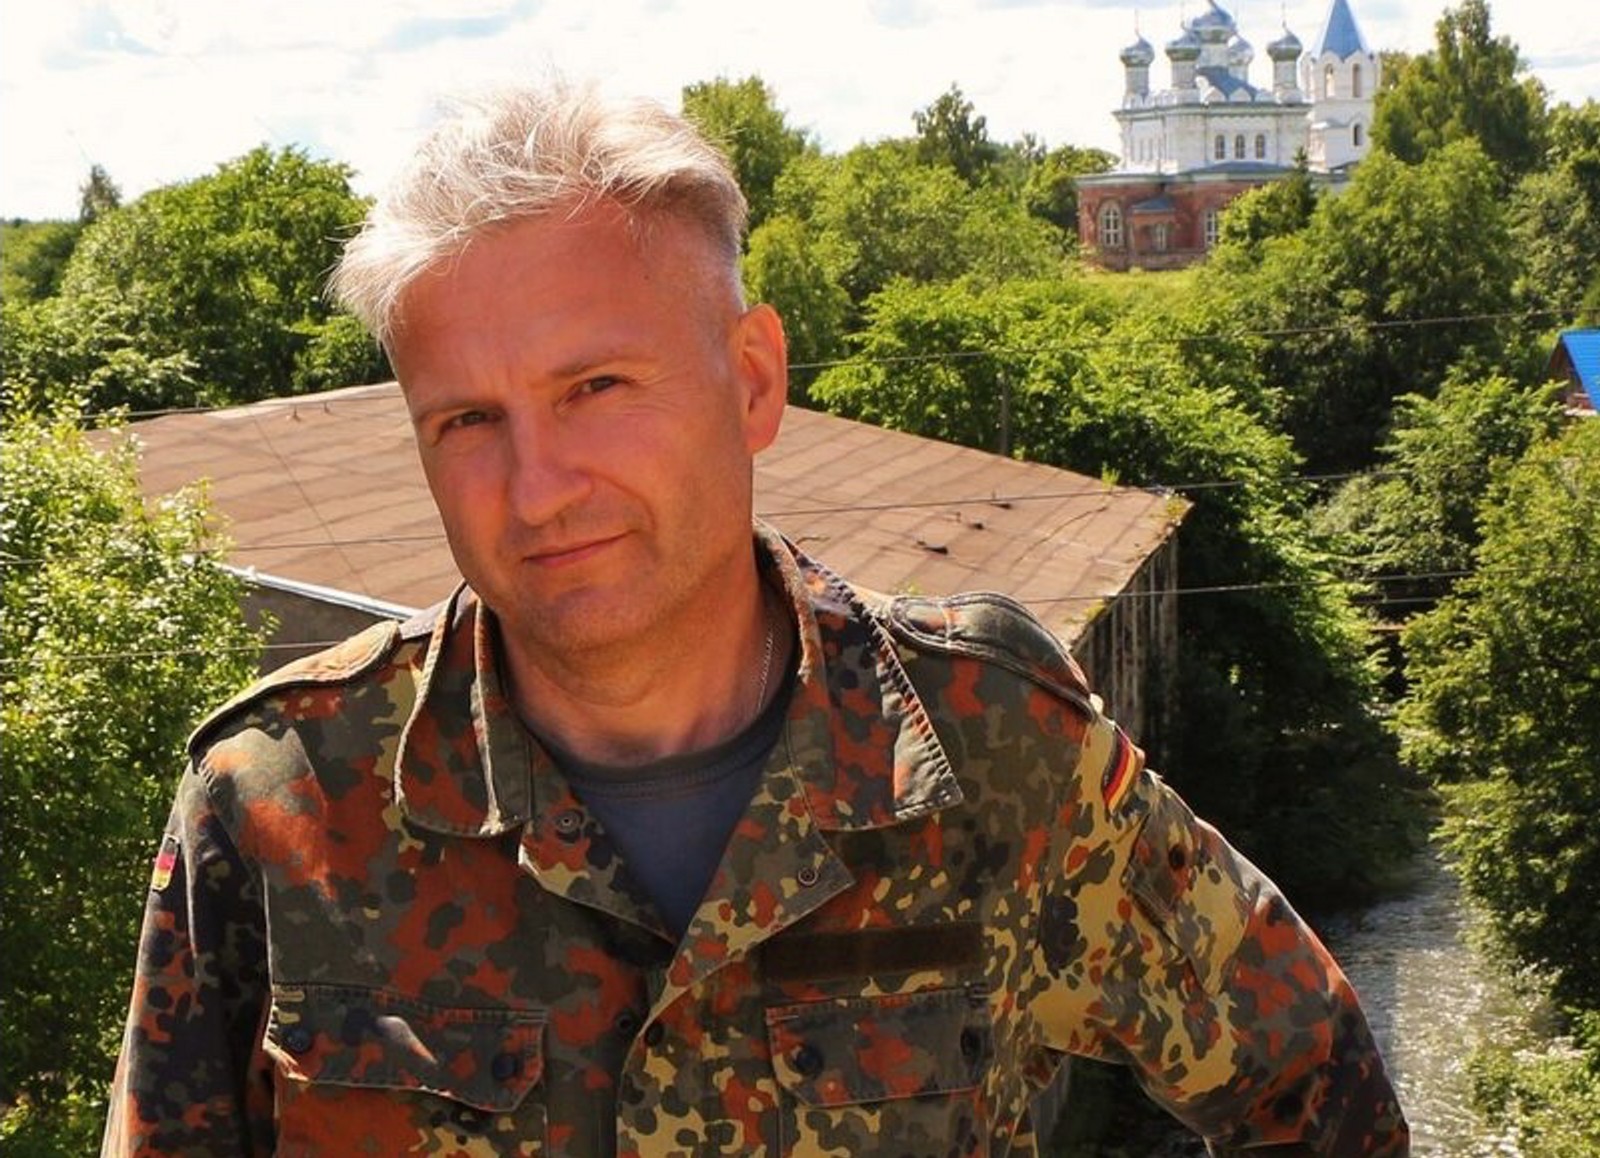 Петербургского археолога приговорили к 5,5 года за «фейки» про армию. На него донесли приятели по паблику во «ВКонтакте»